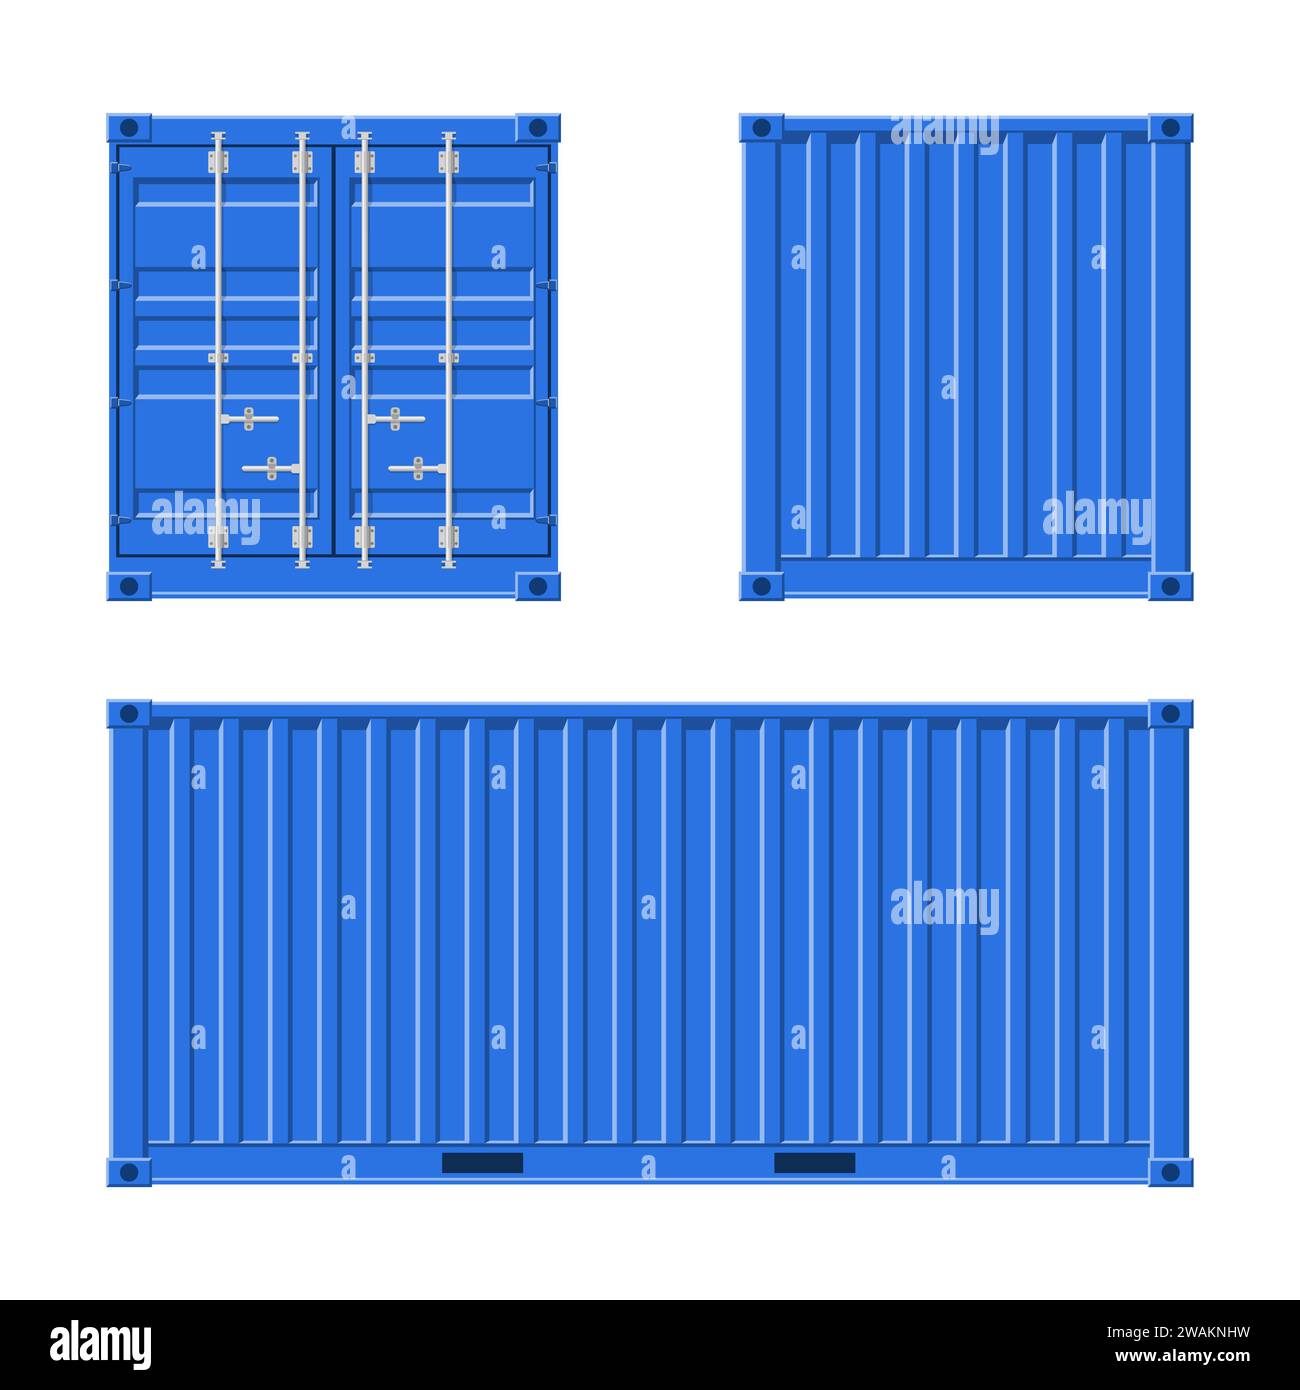 Blauer Frachtcontainer für Versand und Seereport isoliert auf weißem Hintergrund. Vorder-, Rückseiten- und Seitenansicht. Logistik und Transport Vektor Illustra Stock Vektor